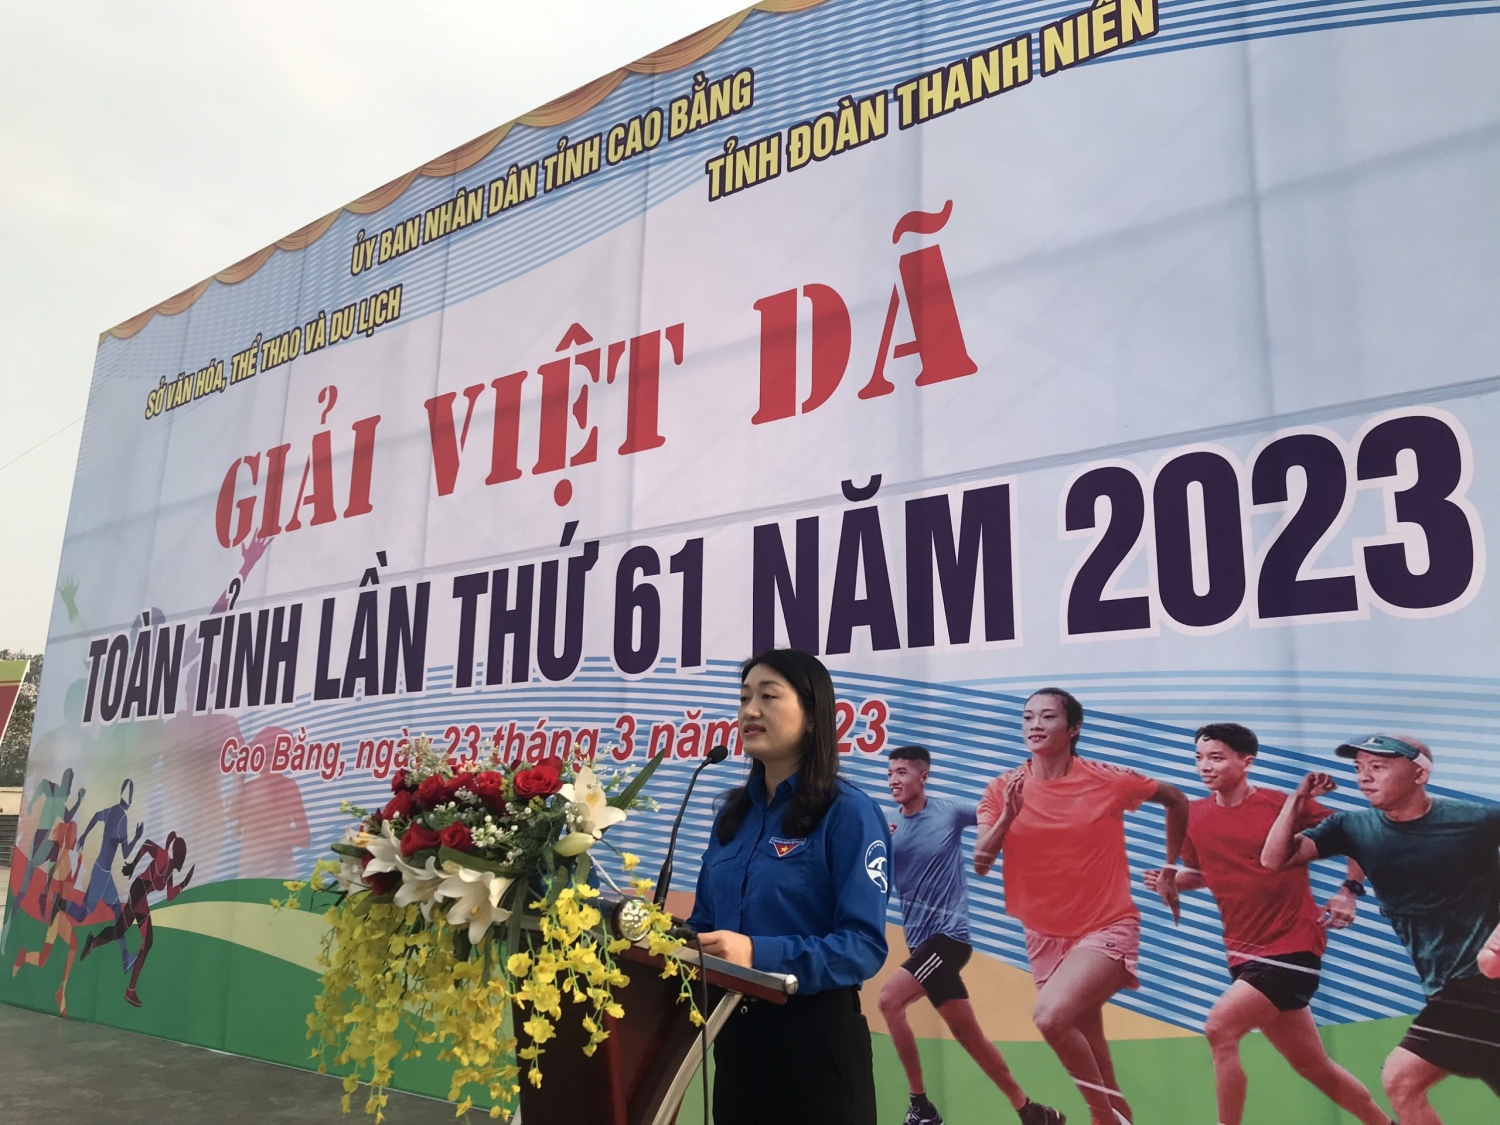 Đồng chí Triệu Thanh Dung Phó Bí thư Tỉnh Đoàn, Trưởng ban tổ chức Giải Việt dã phát biểu khai mạc chương trình